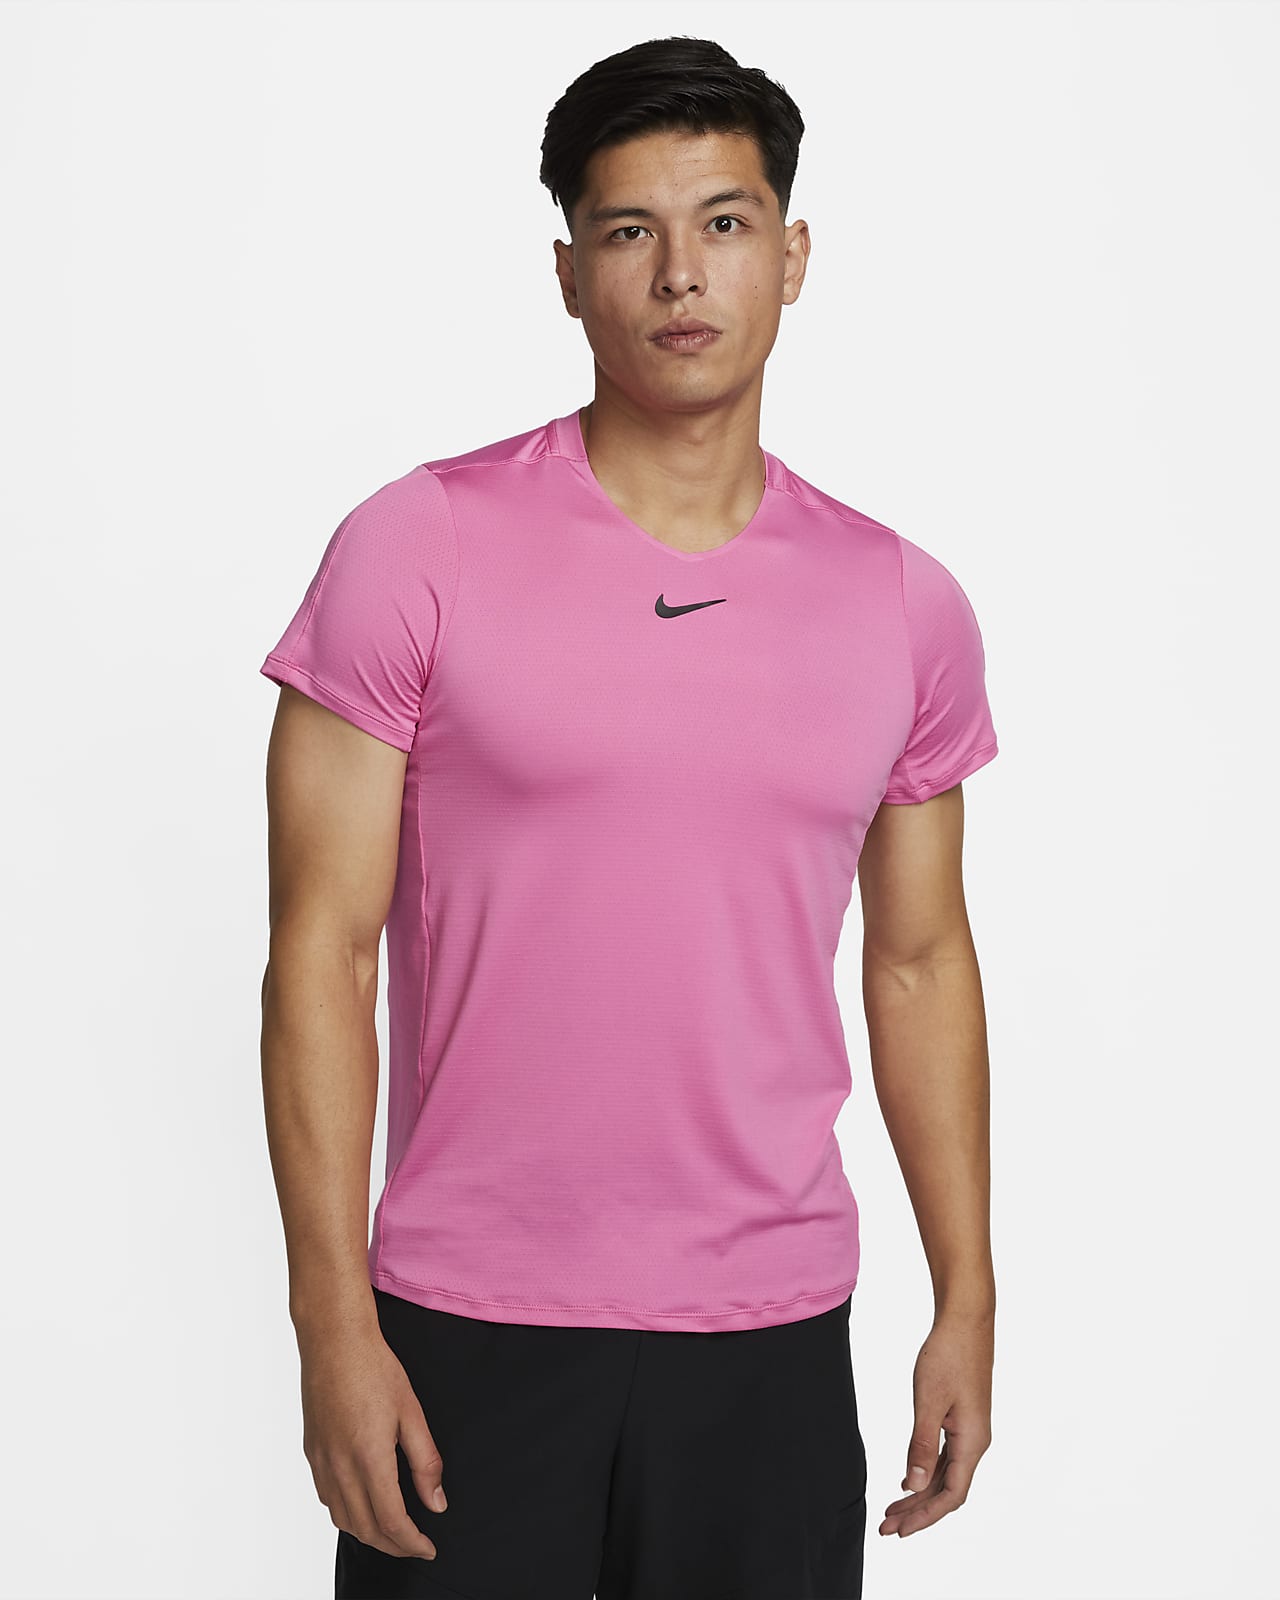 Advantage Men's Tennis Top. Nike.com